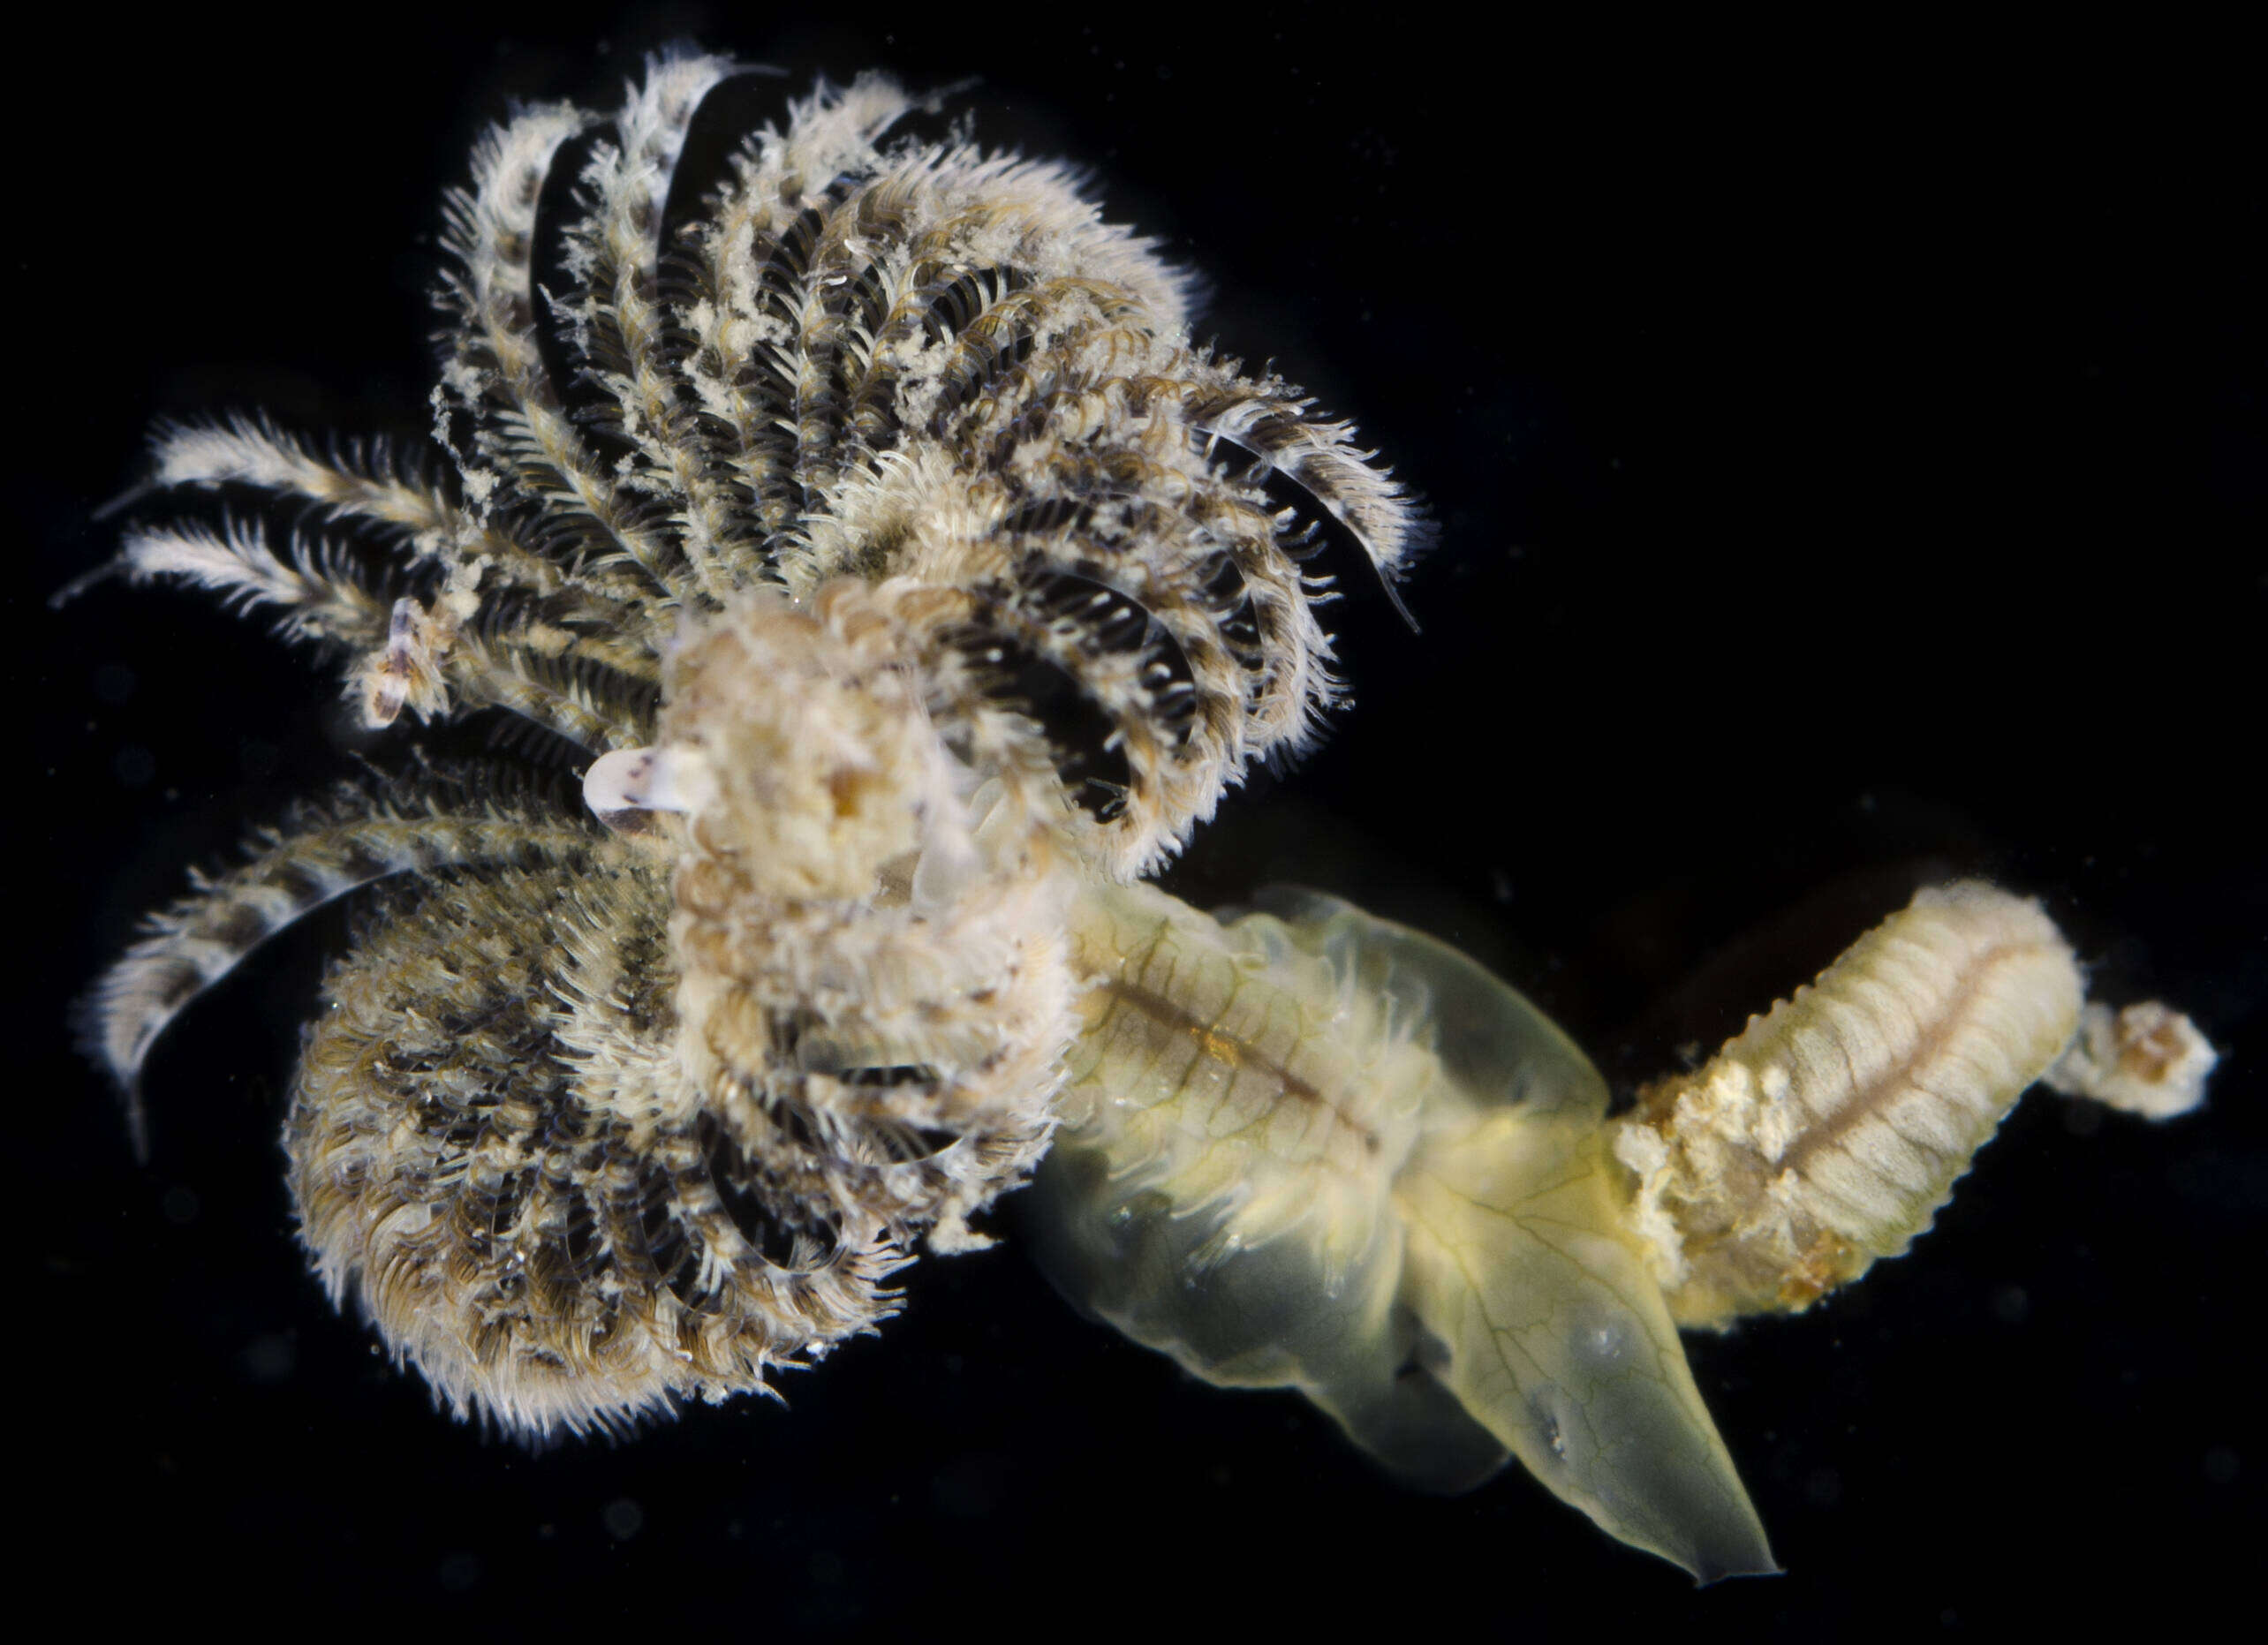 Image of Hard tube worm